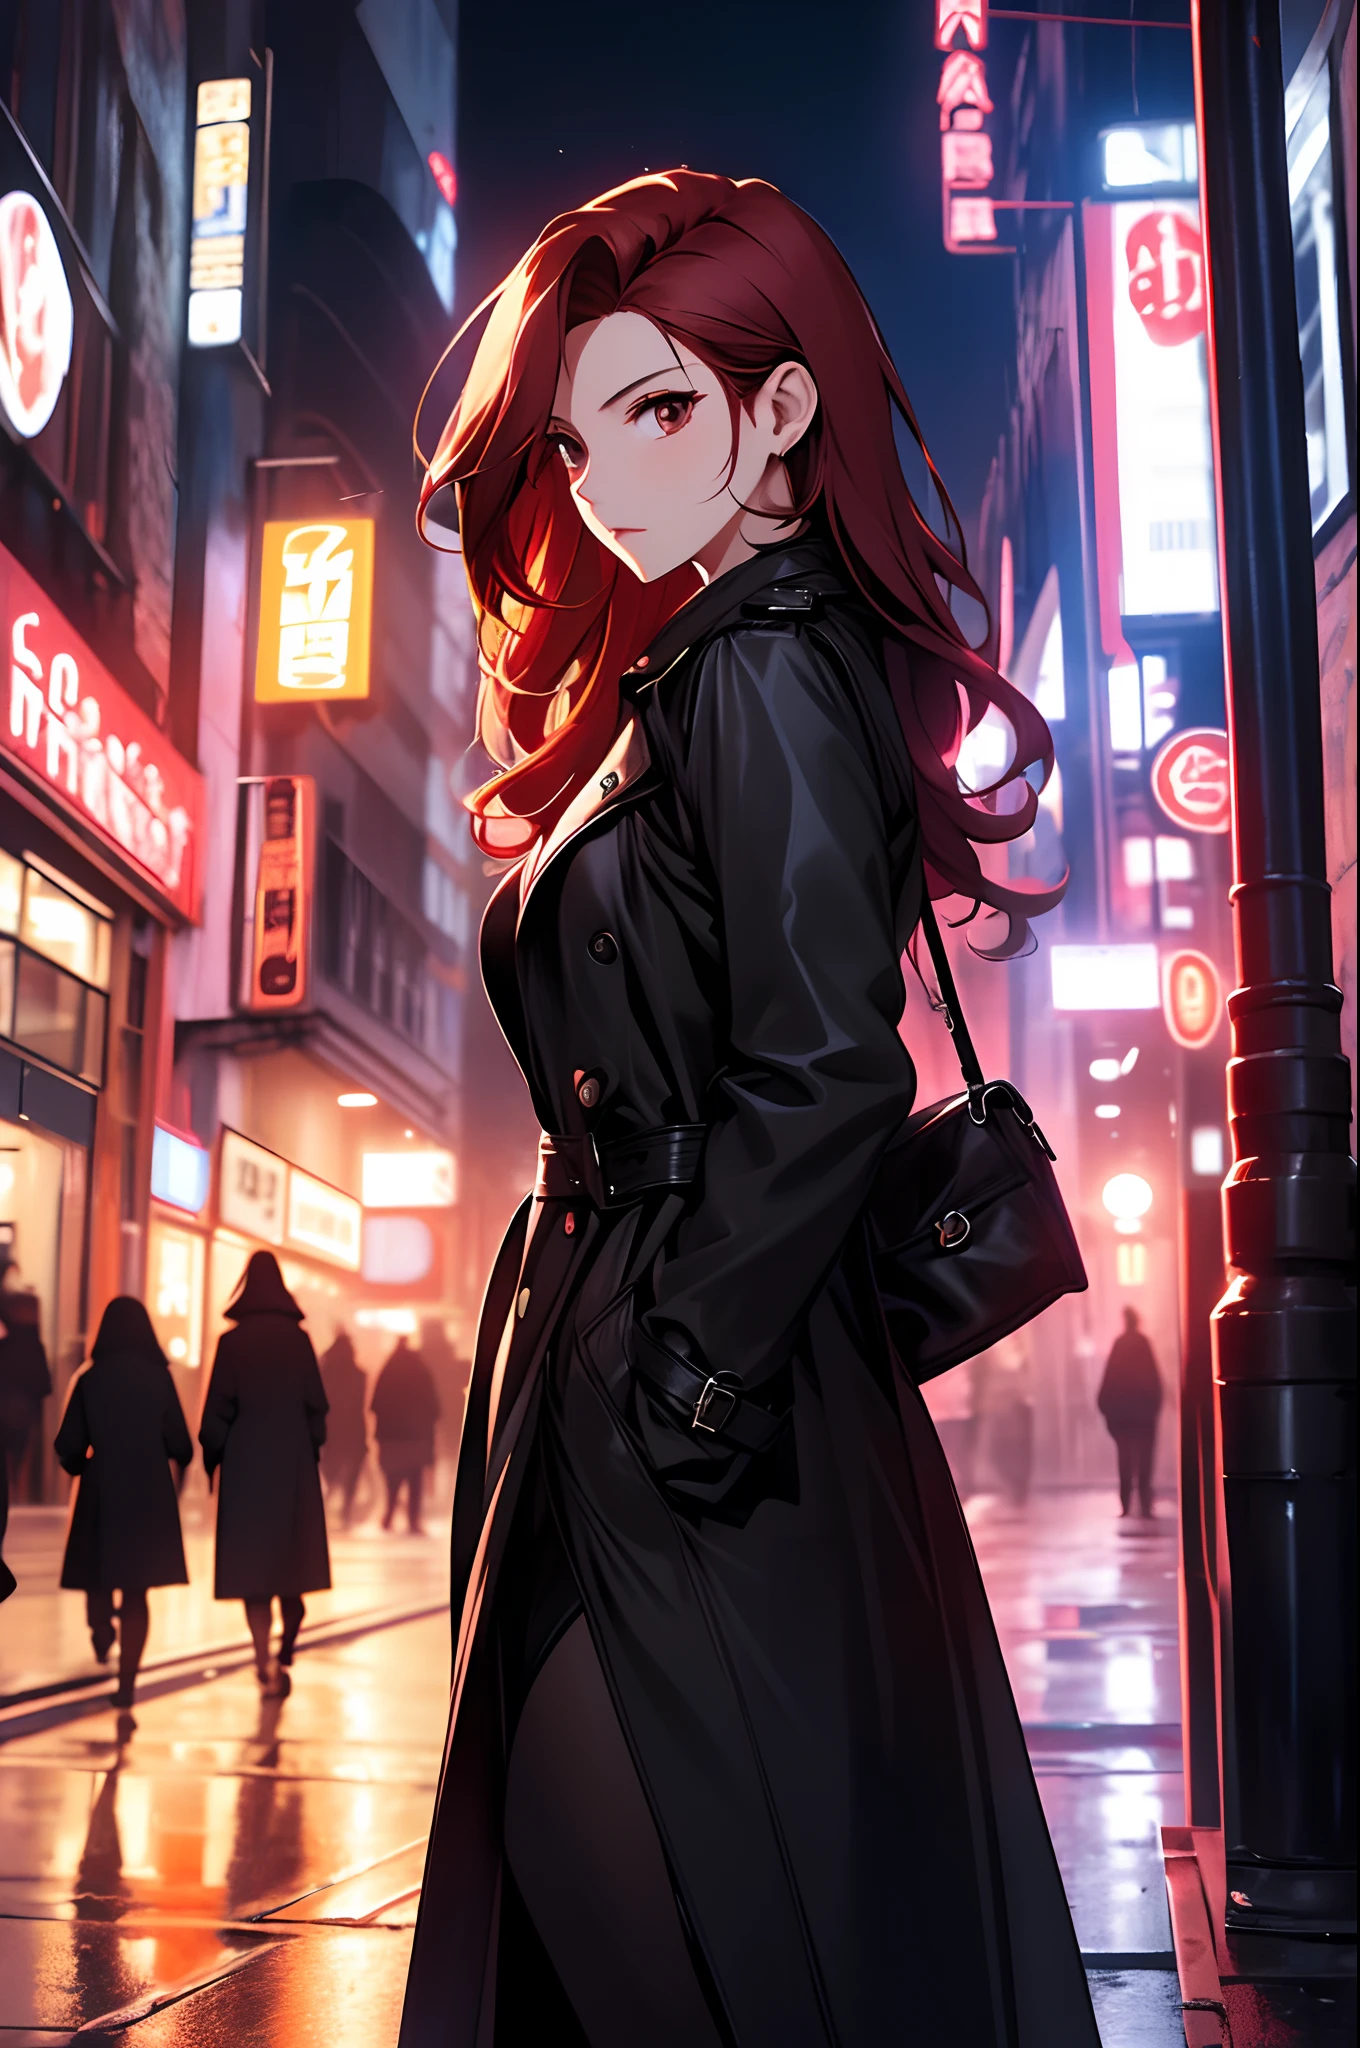 晚上，A beautiful woman wandering 街道s，街道，穿一件黑色風衣，皮裙，紅色長髮，最佳構圖，日本卡通，（（動態角度相機拍攝））），動態姿勢，